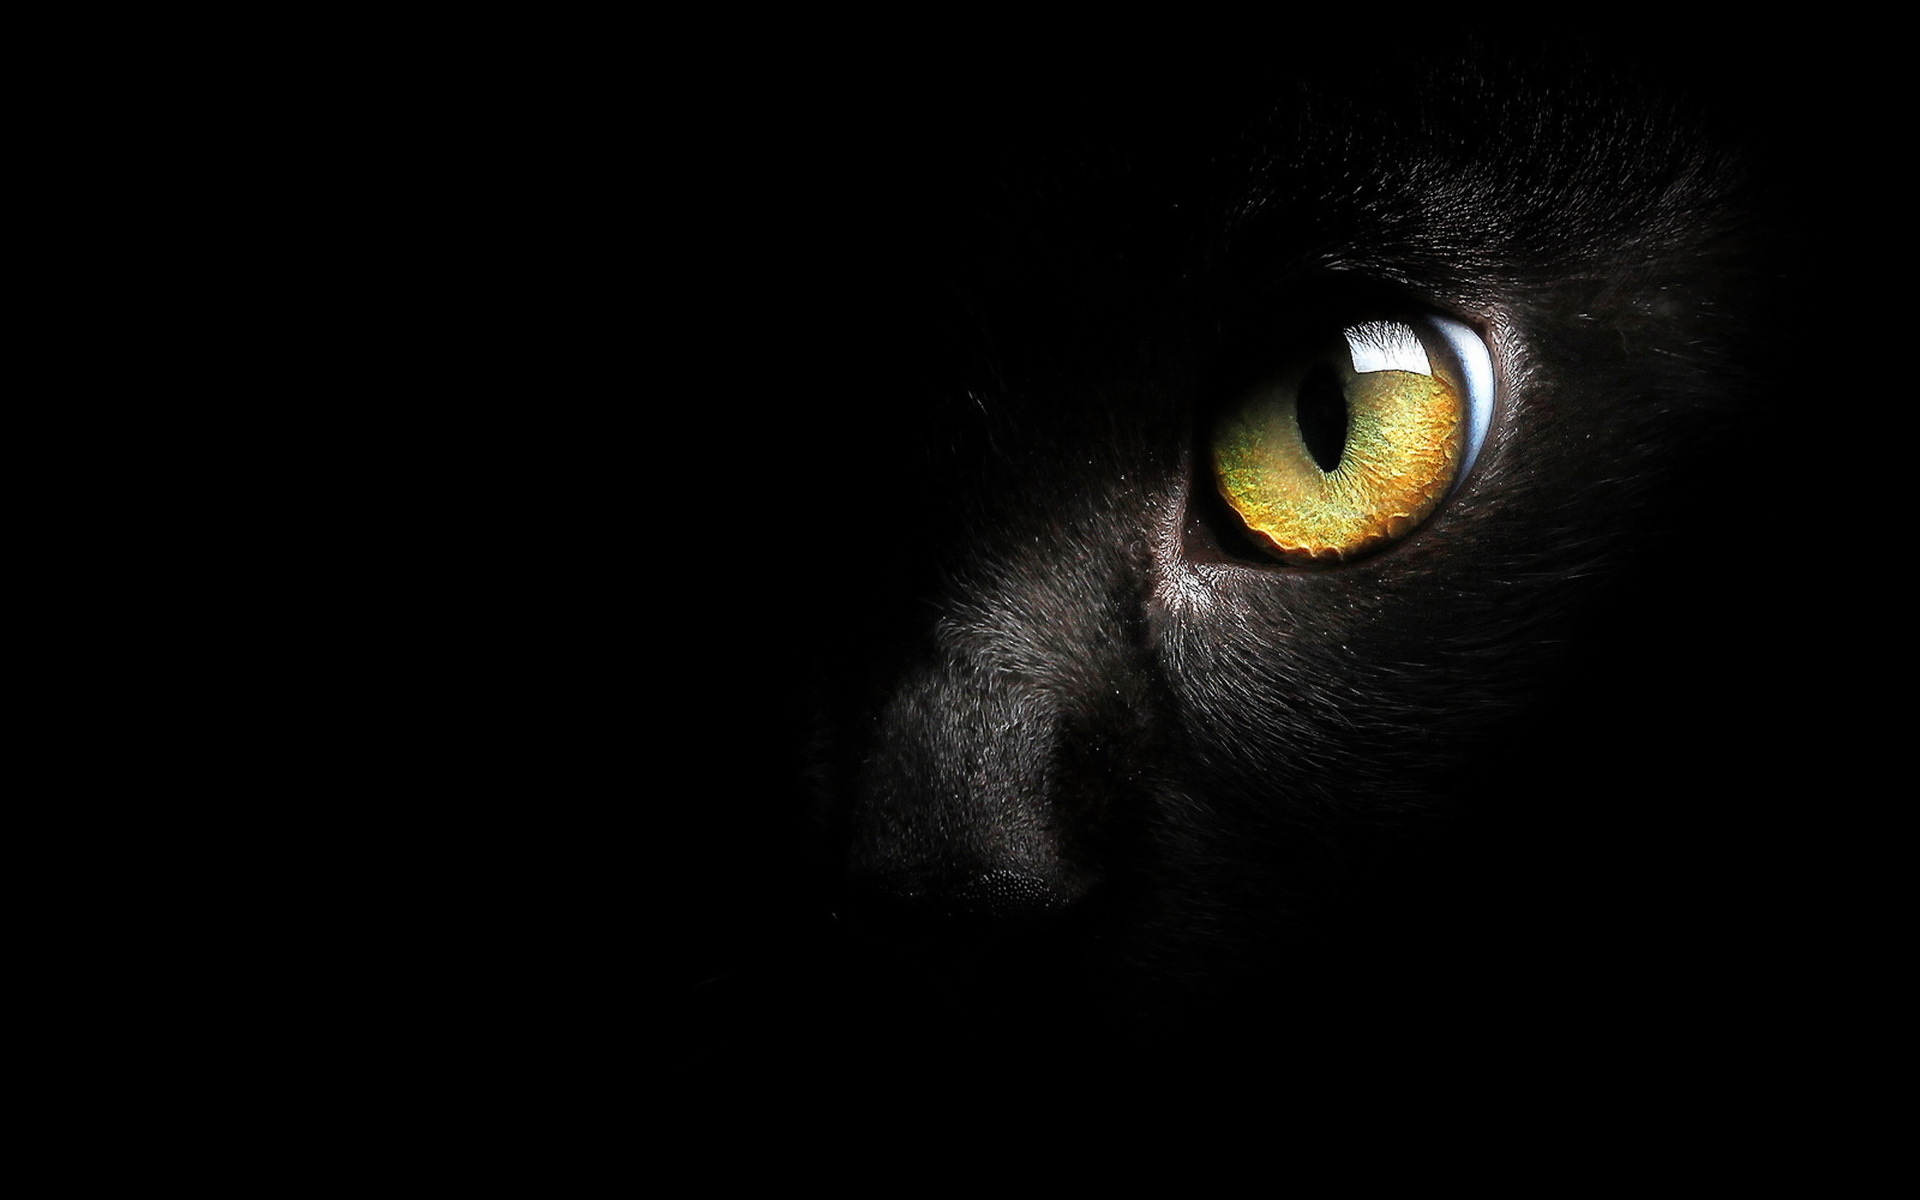 фанфик глаза пантеры светятся в ночи фото 65